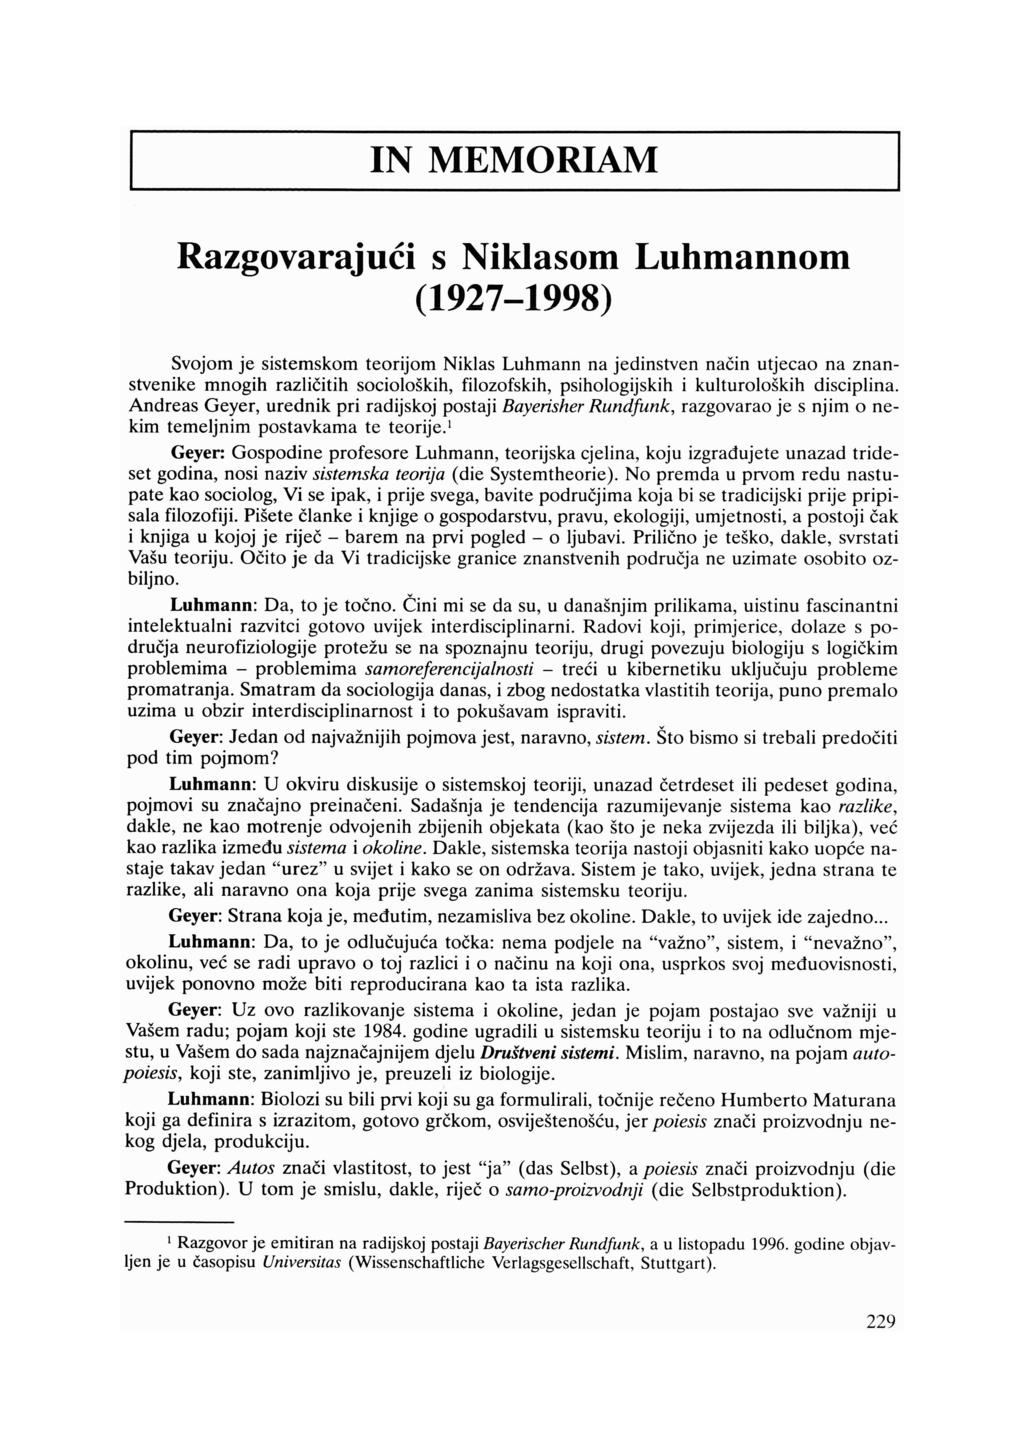 IN MEMORIAM Razgovarajući s Niklasom Luhmannom (1927-1998) Svojom je sistemskom teorijom Niklas Luhmann na jedinstven način utjecao na znan stvenike mnogih različitih socioloških, filozofskih,